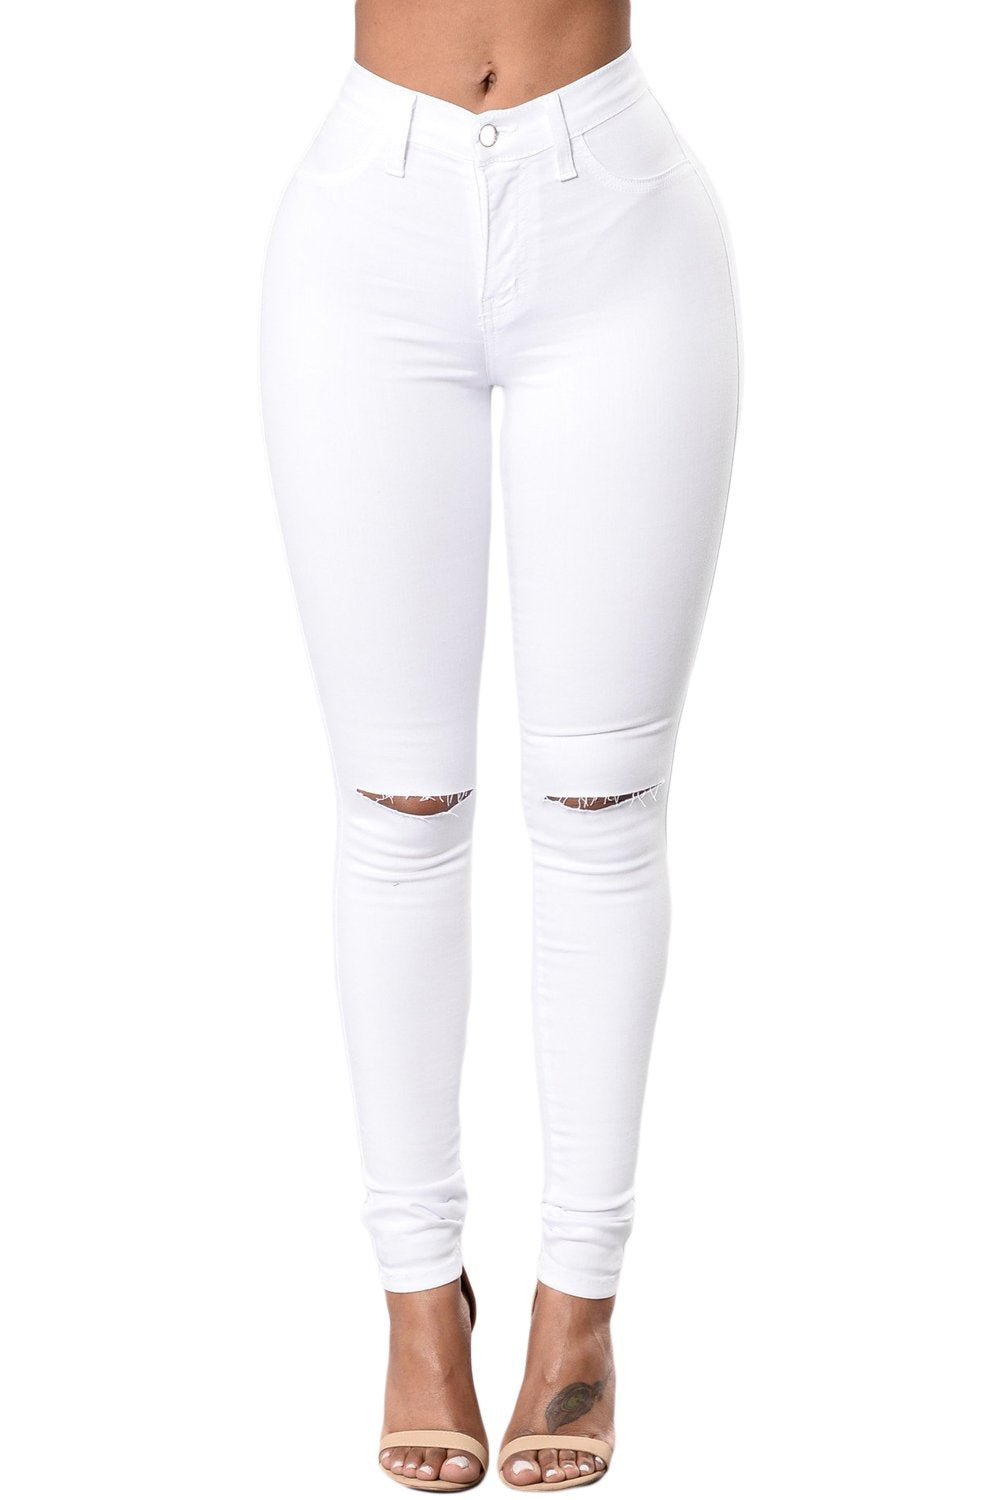 Pantalones de mezclilla con abertura en la rodilla blanca de moda